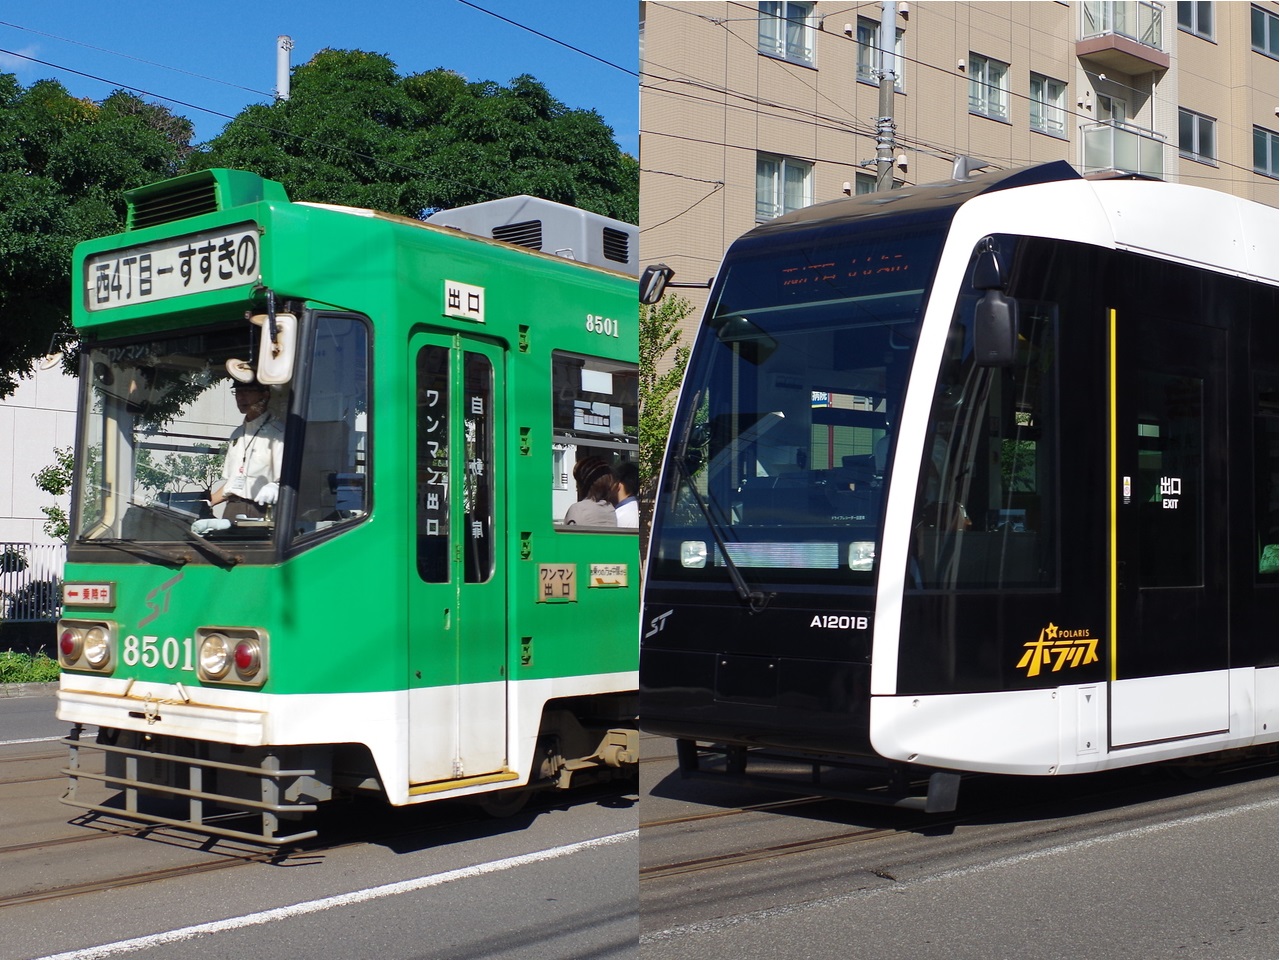 札幌市電の古いタイプ(緑色・床高め)が左側に、新しいタイプ(白黒・床低め)が右側に写っています